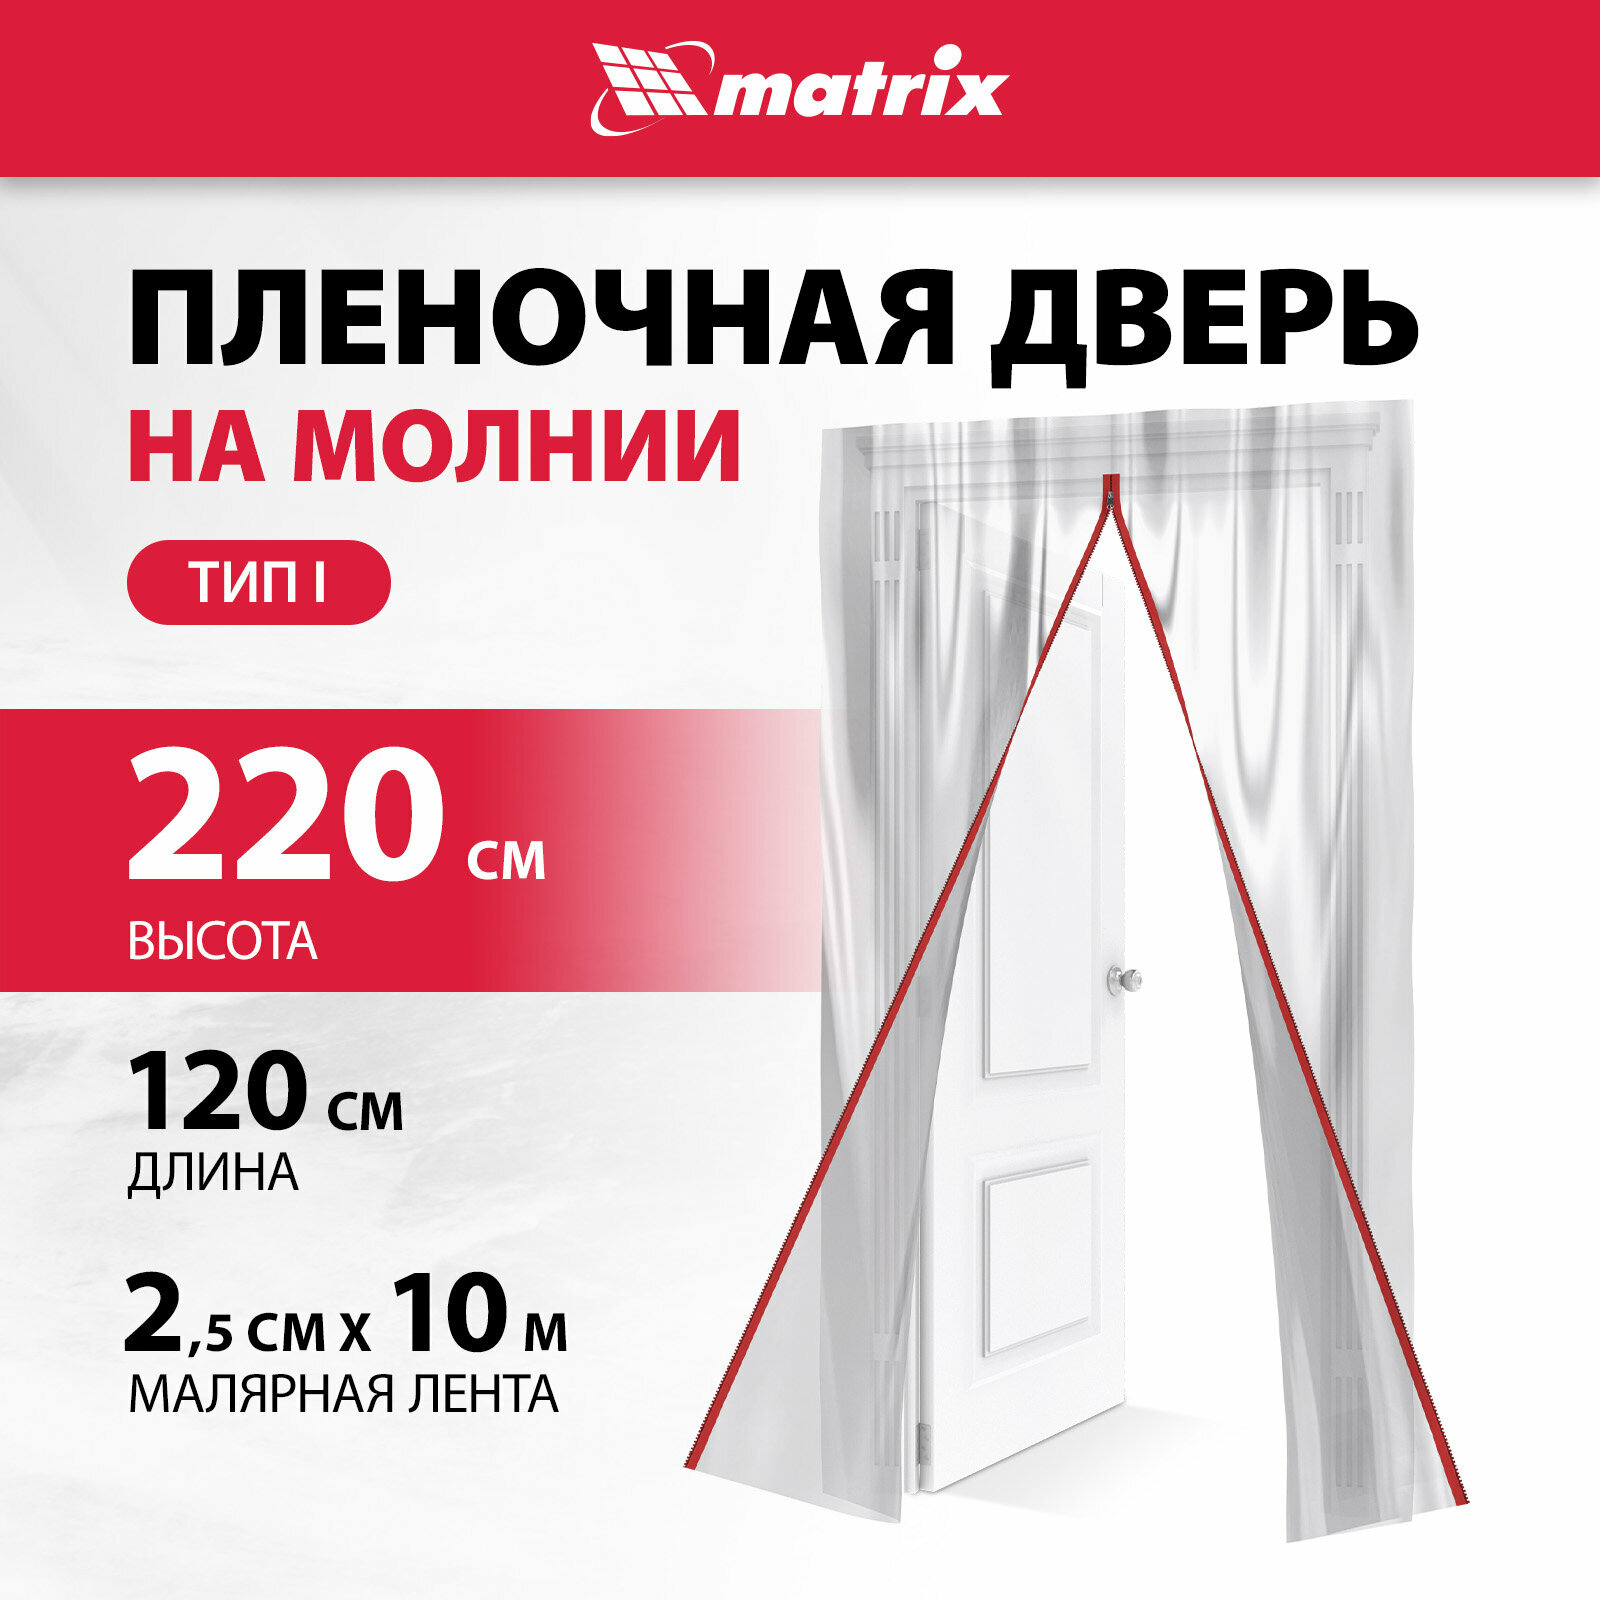 Пленочная дверь на молнии типа I Matrix 220x120cm, с малярной лентой 2, 5смх10м 88757